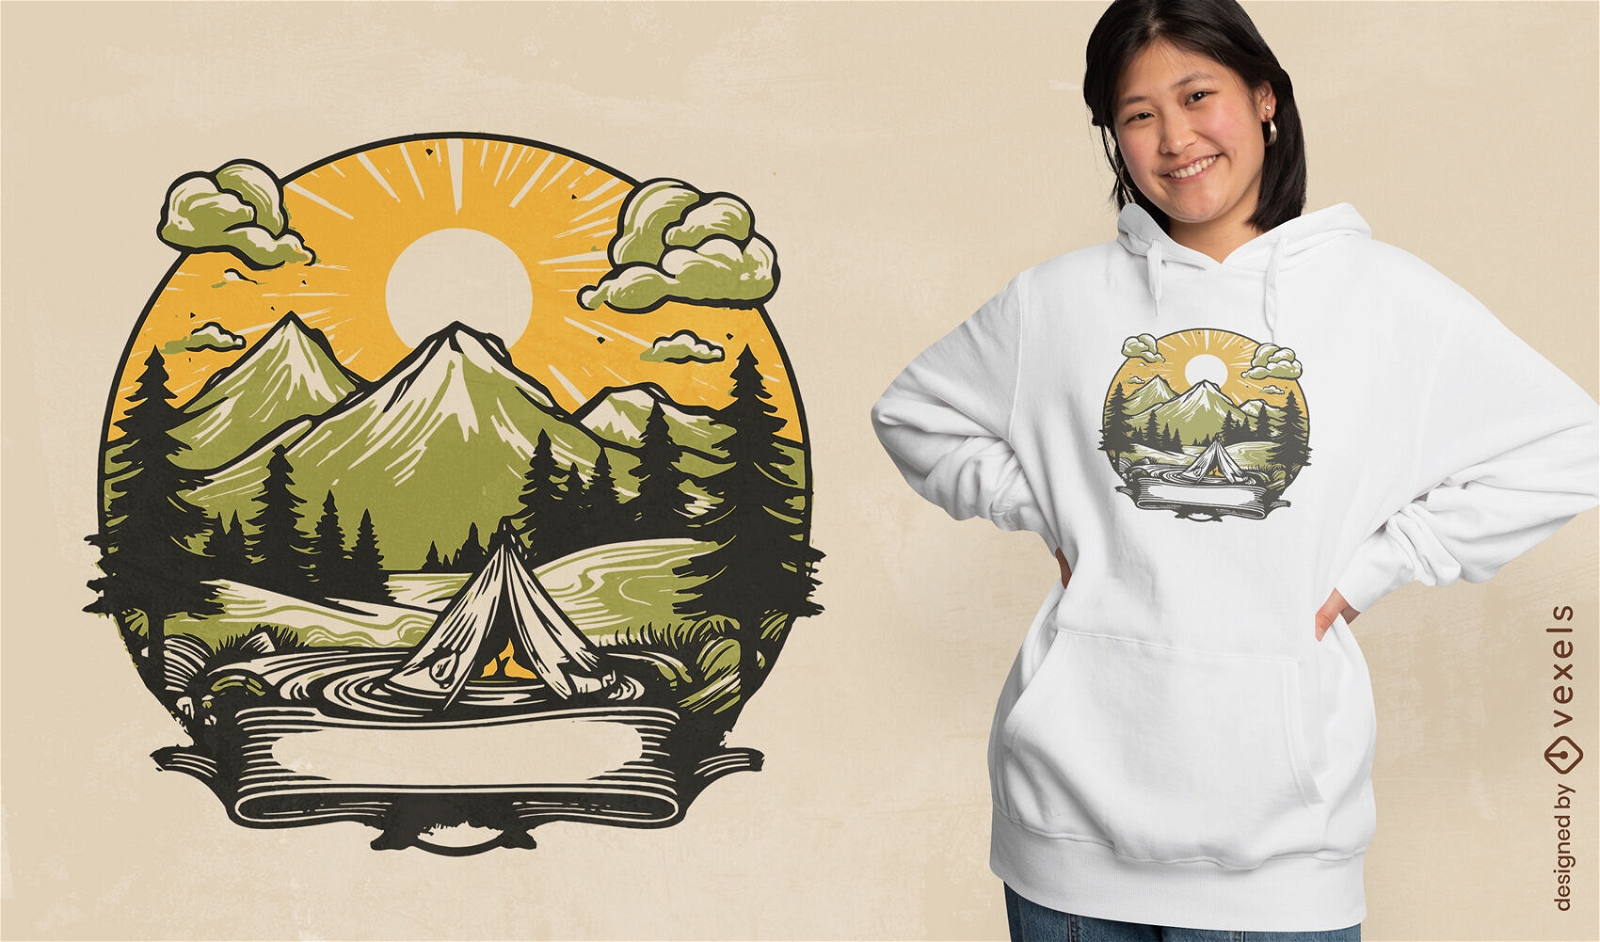 Camping-Landschaftszelt-T-Shirt-Design